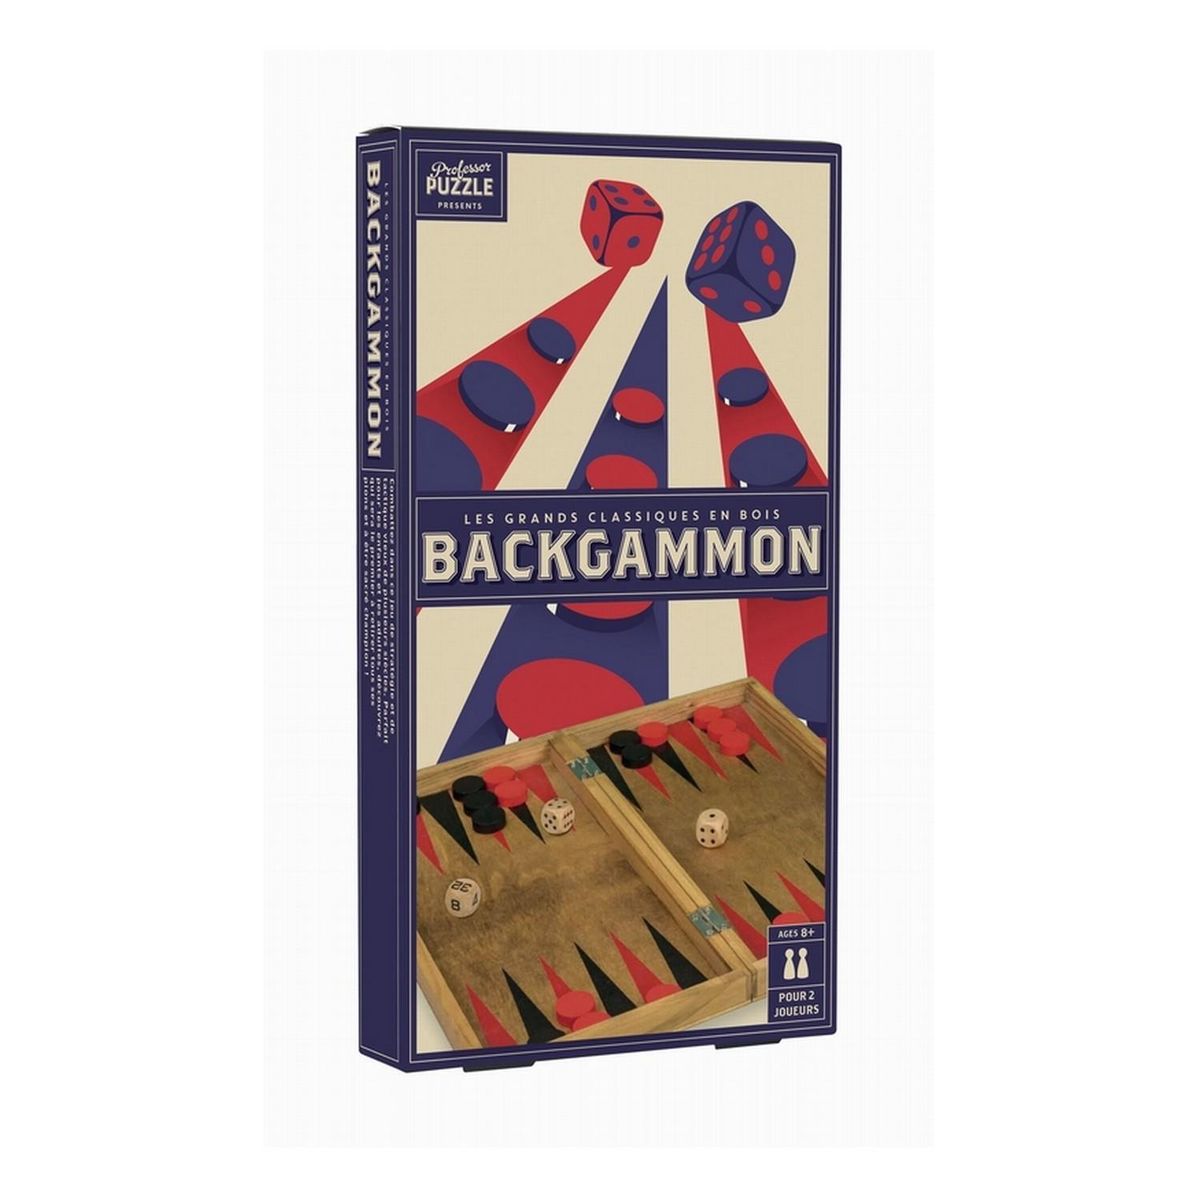 Backgammon - Malette pliable en cuir